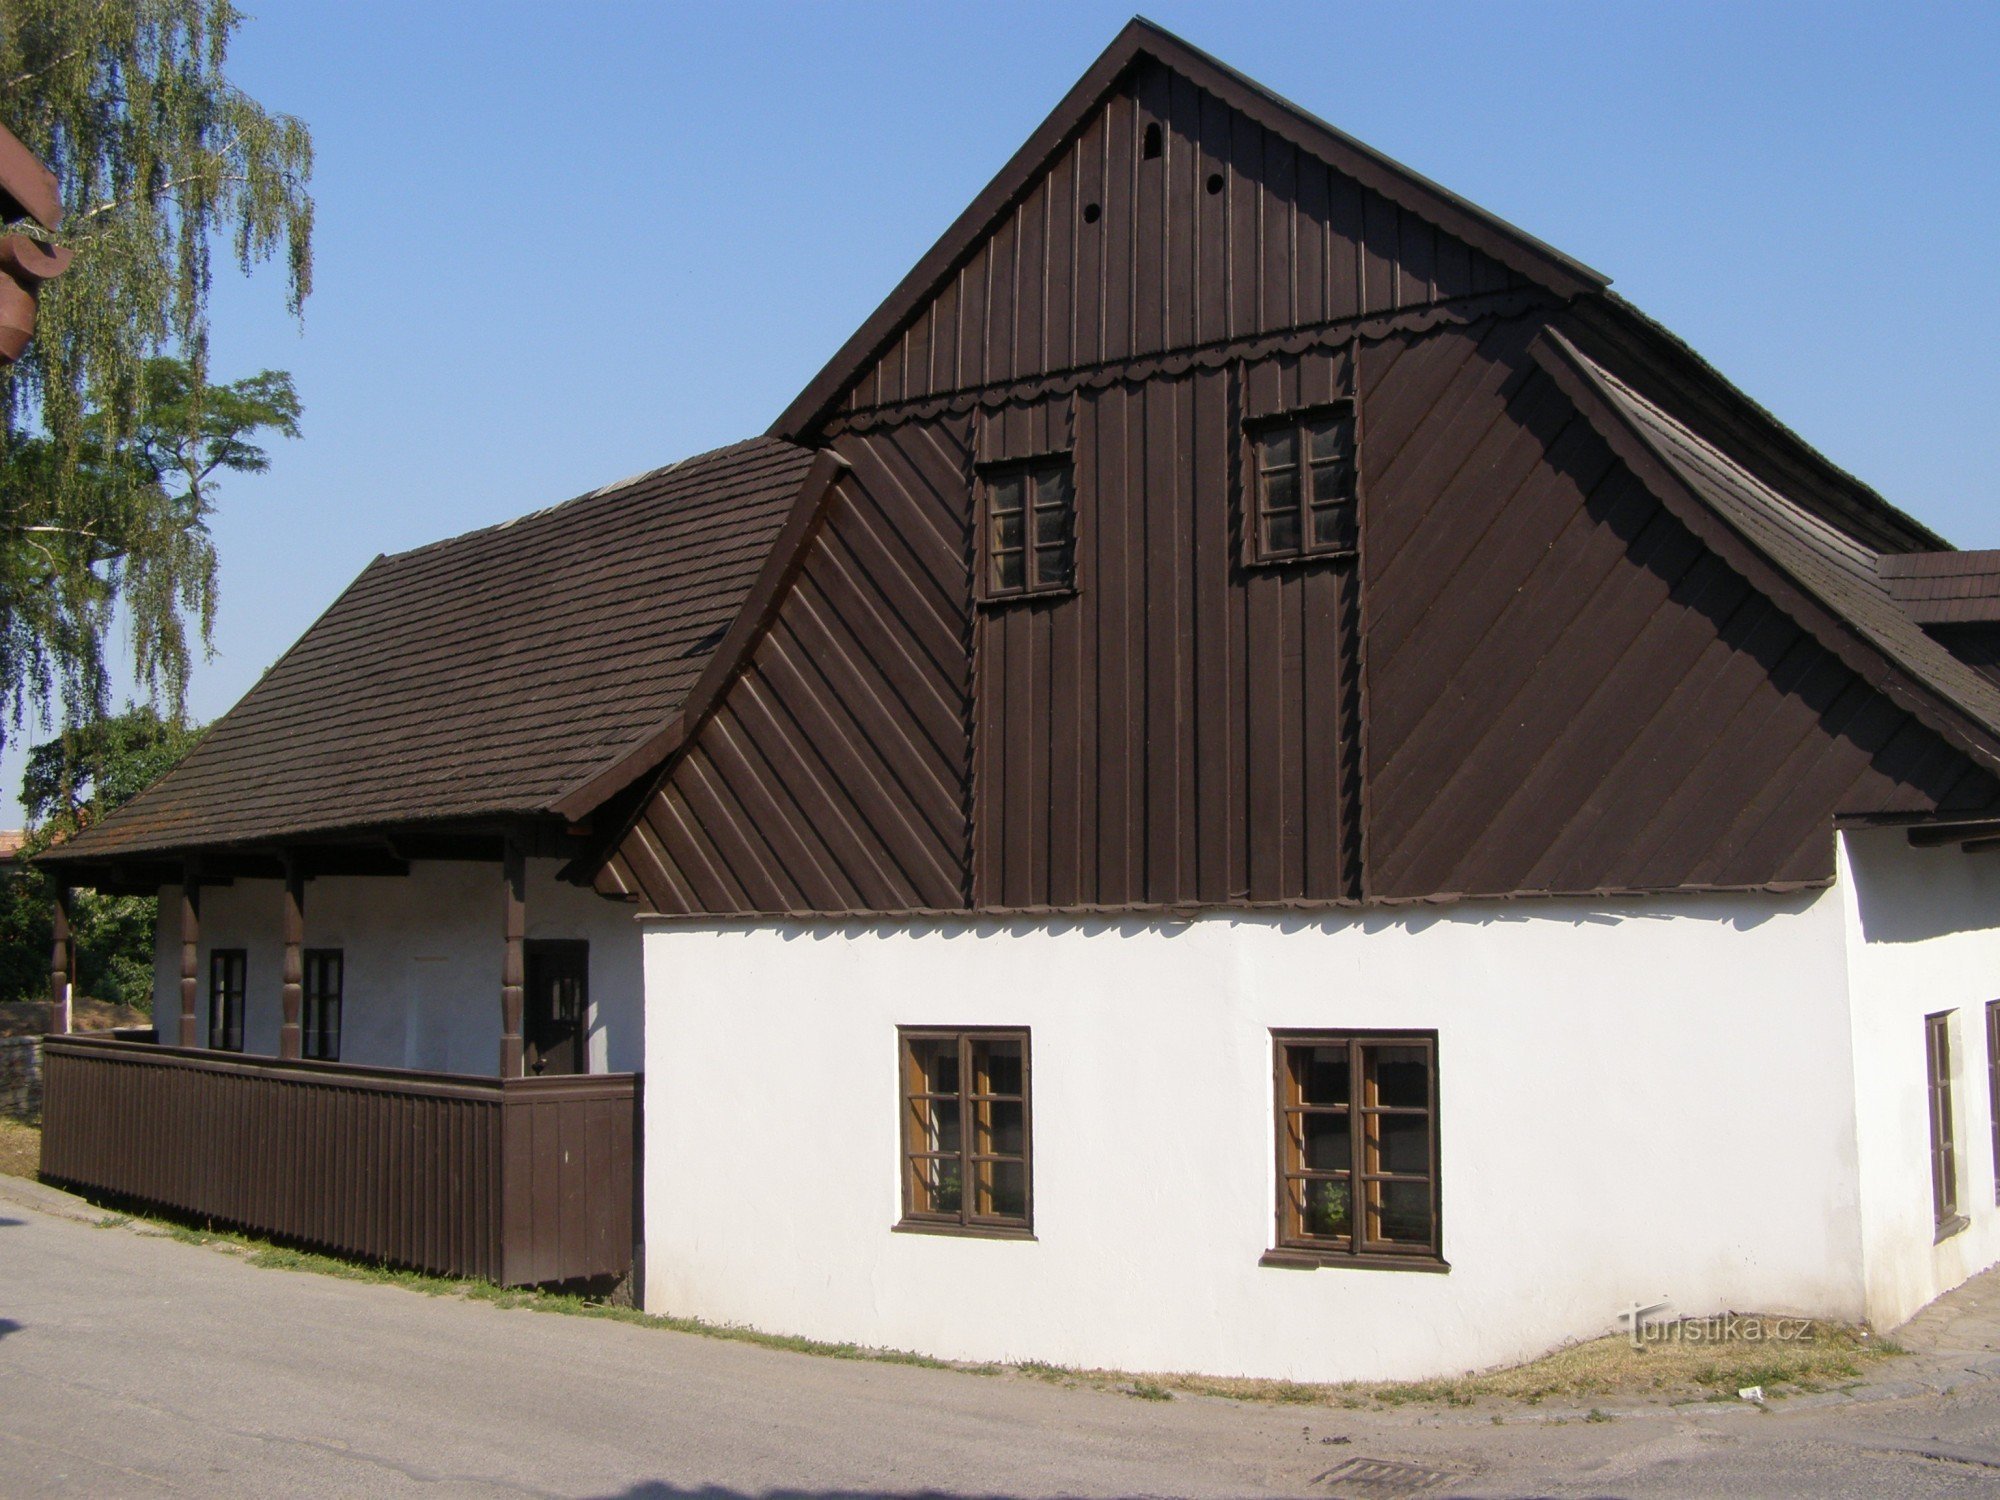 Dobruška - FLVěk (Heka) 的出生地